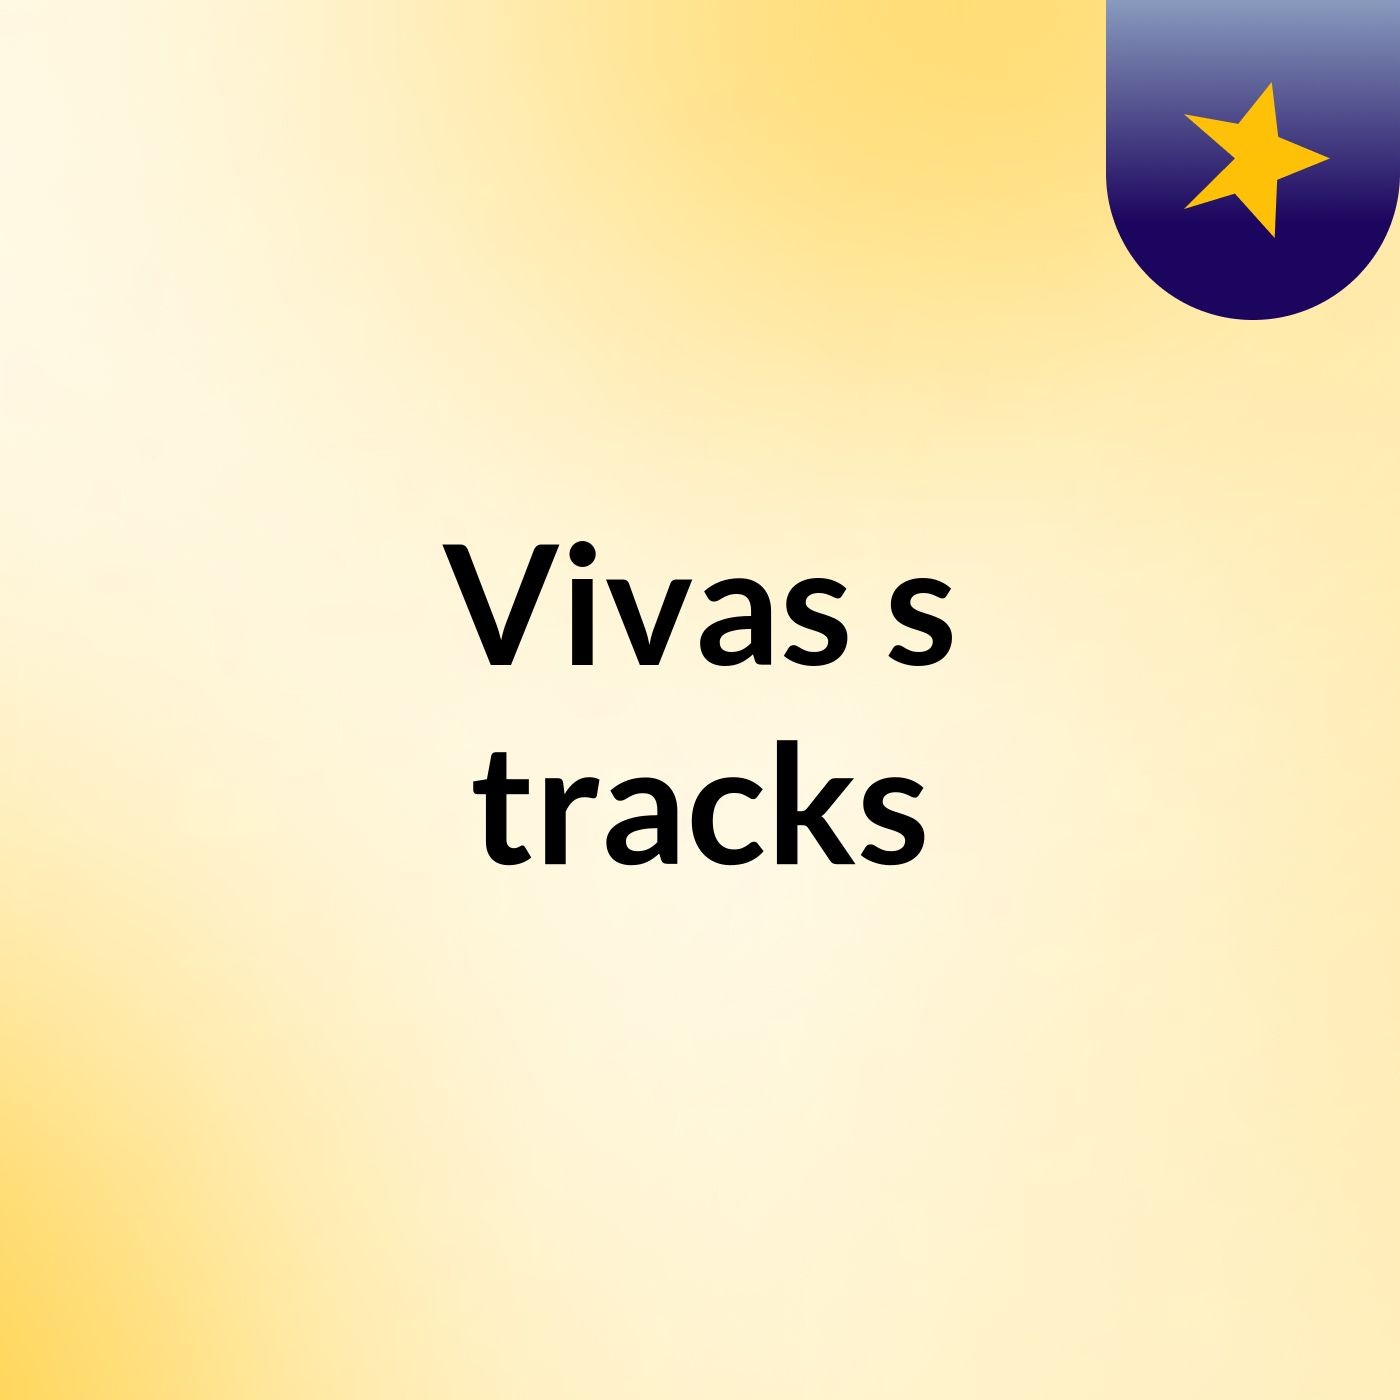 Vivas's tracks